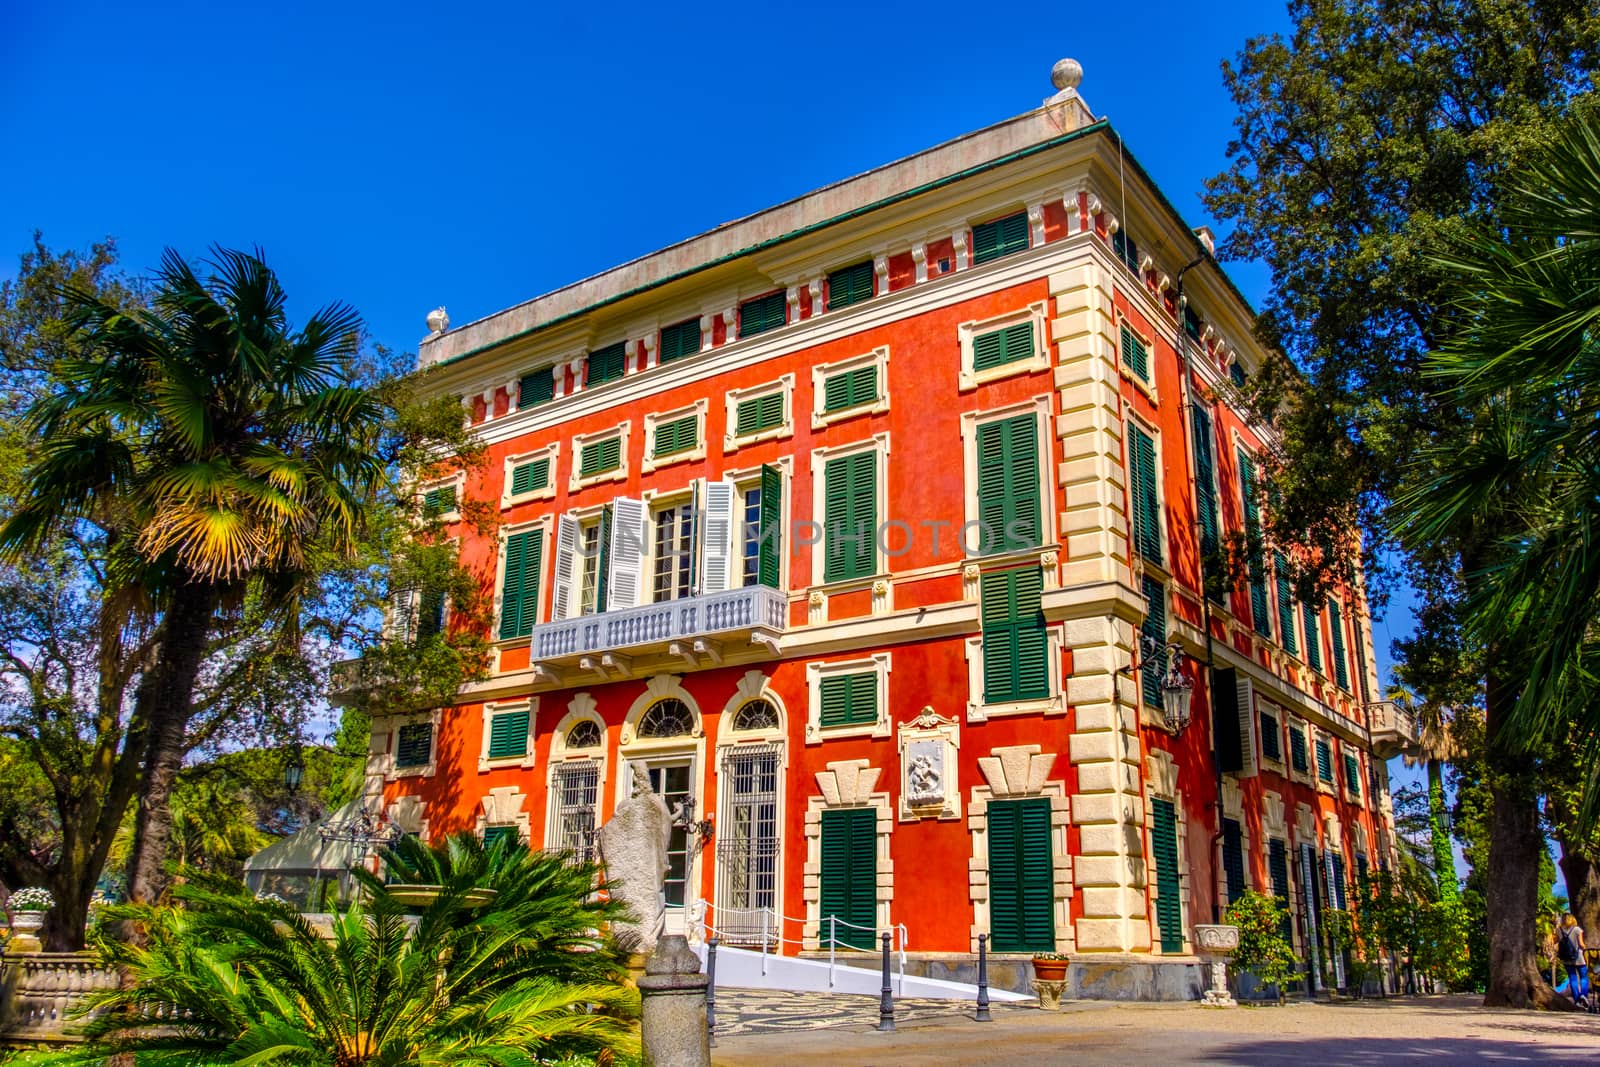 romantic villa Durazzo - Genoa - Liguria region - Italy by LucaLorenzelli